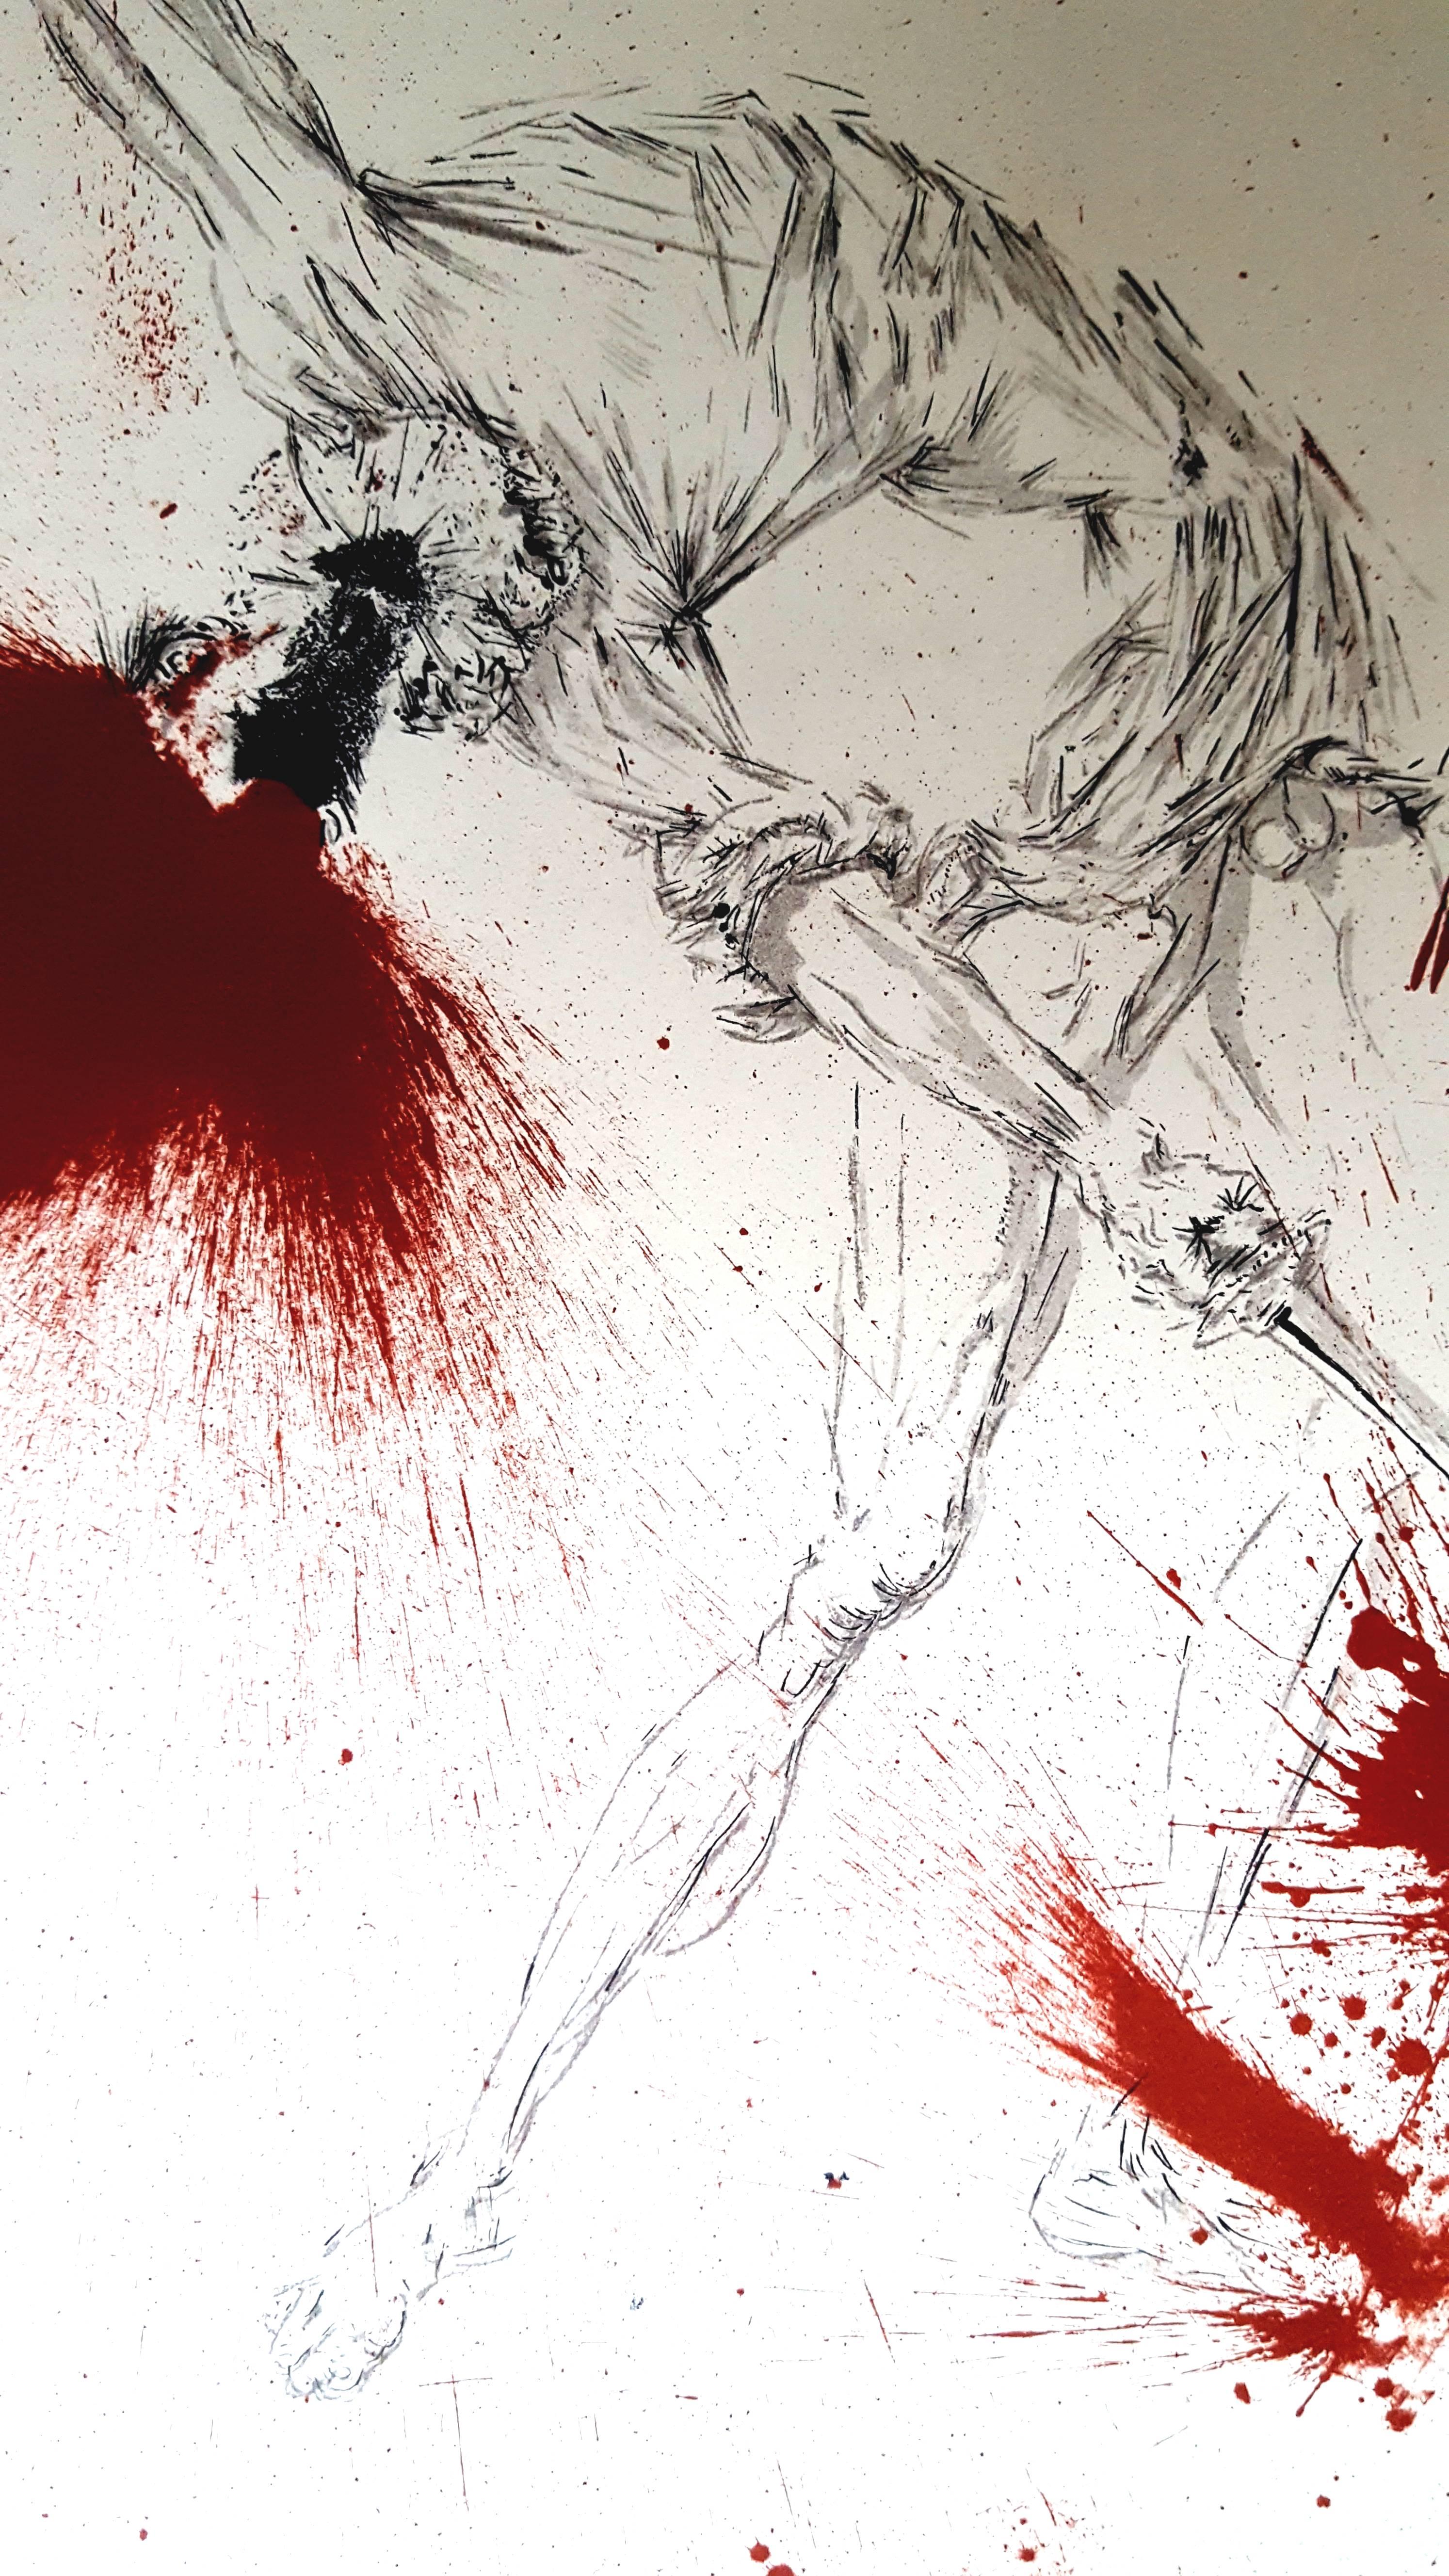 Salvador Dali - Don Quichotte - Original Lithograph
Joseph FORET, Paris, 1957
PRINTER : Atelier Mourlot. 
- SIGNATURE : plate signed by Dali. 
- LIMITED : 197 copies. 
- PAPER : BFK Rives vellum. 
- SIZE : 17 x 14". 
- REFERENCES : Field 57-1 /